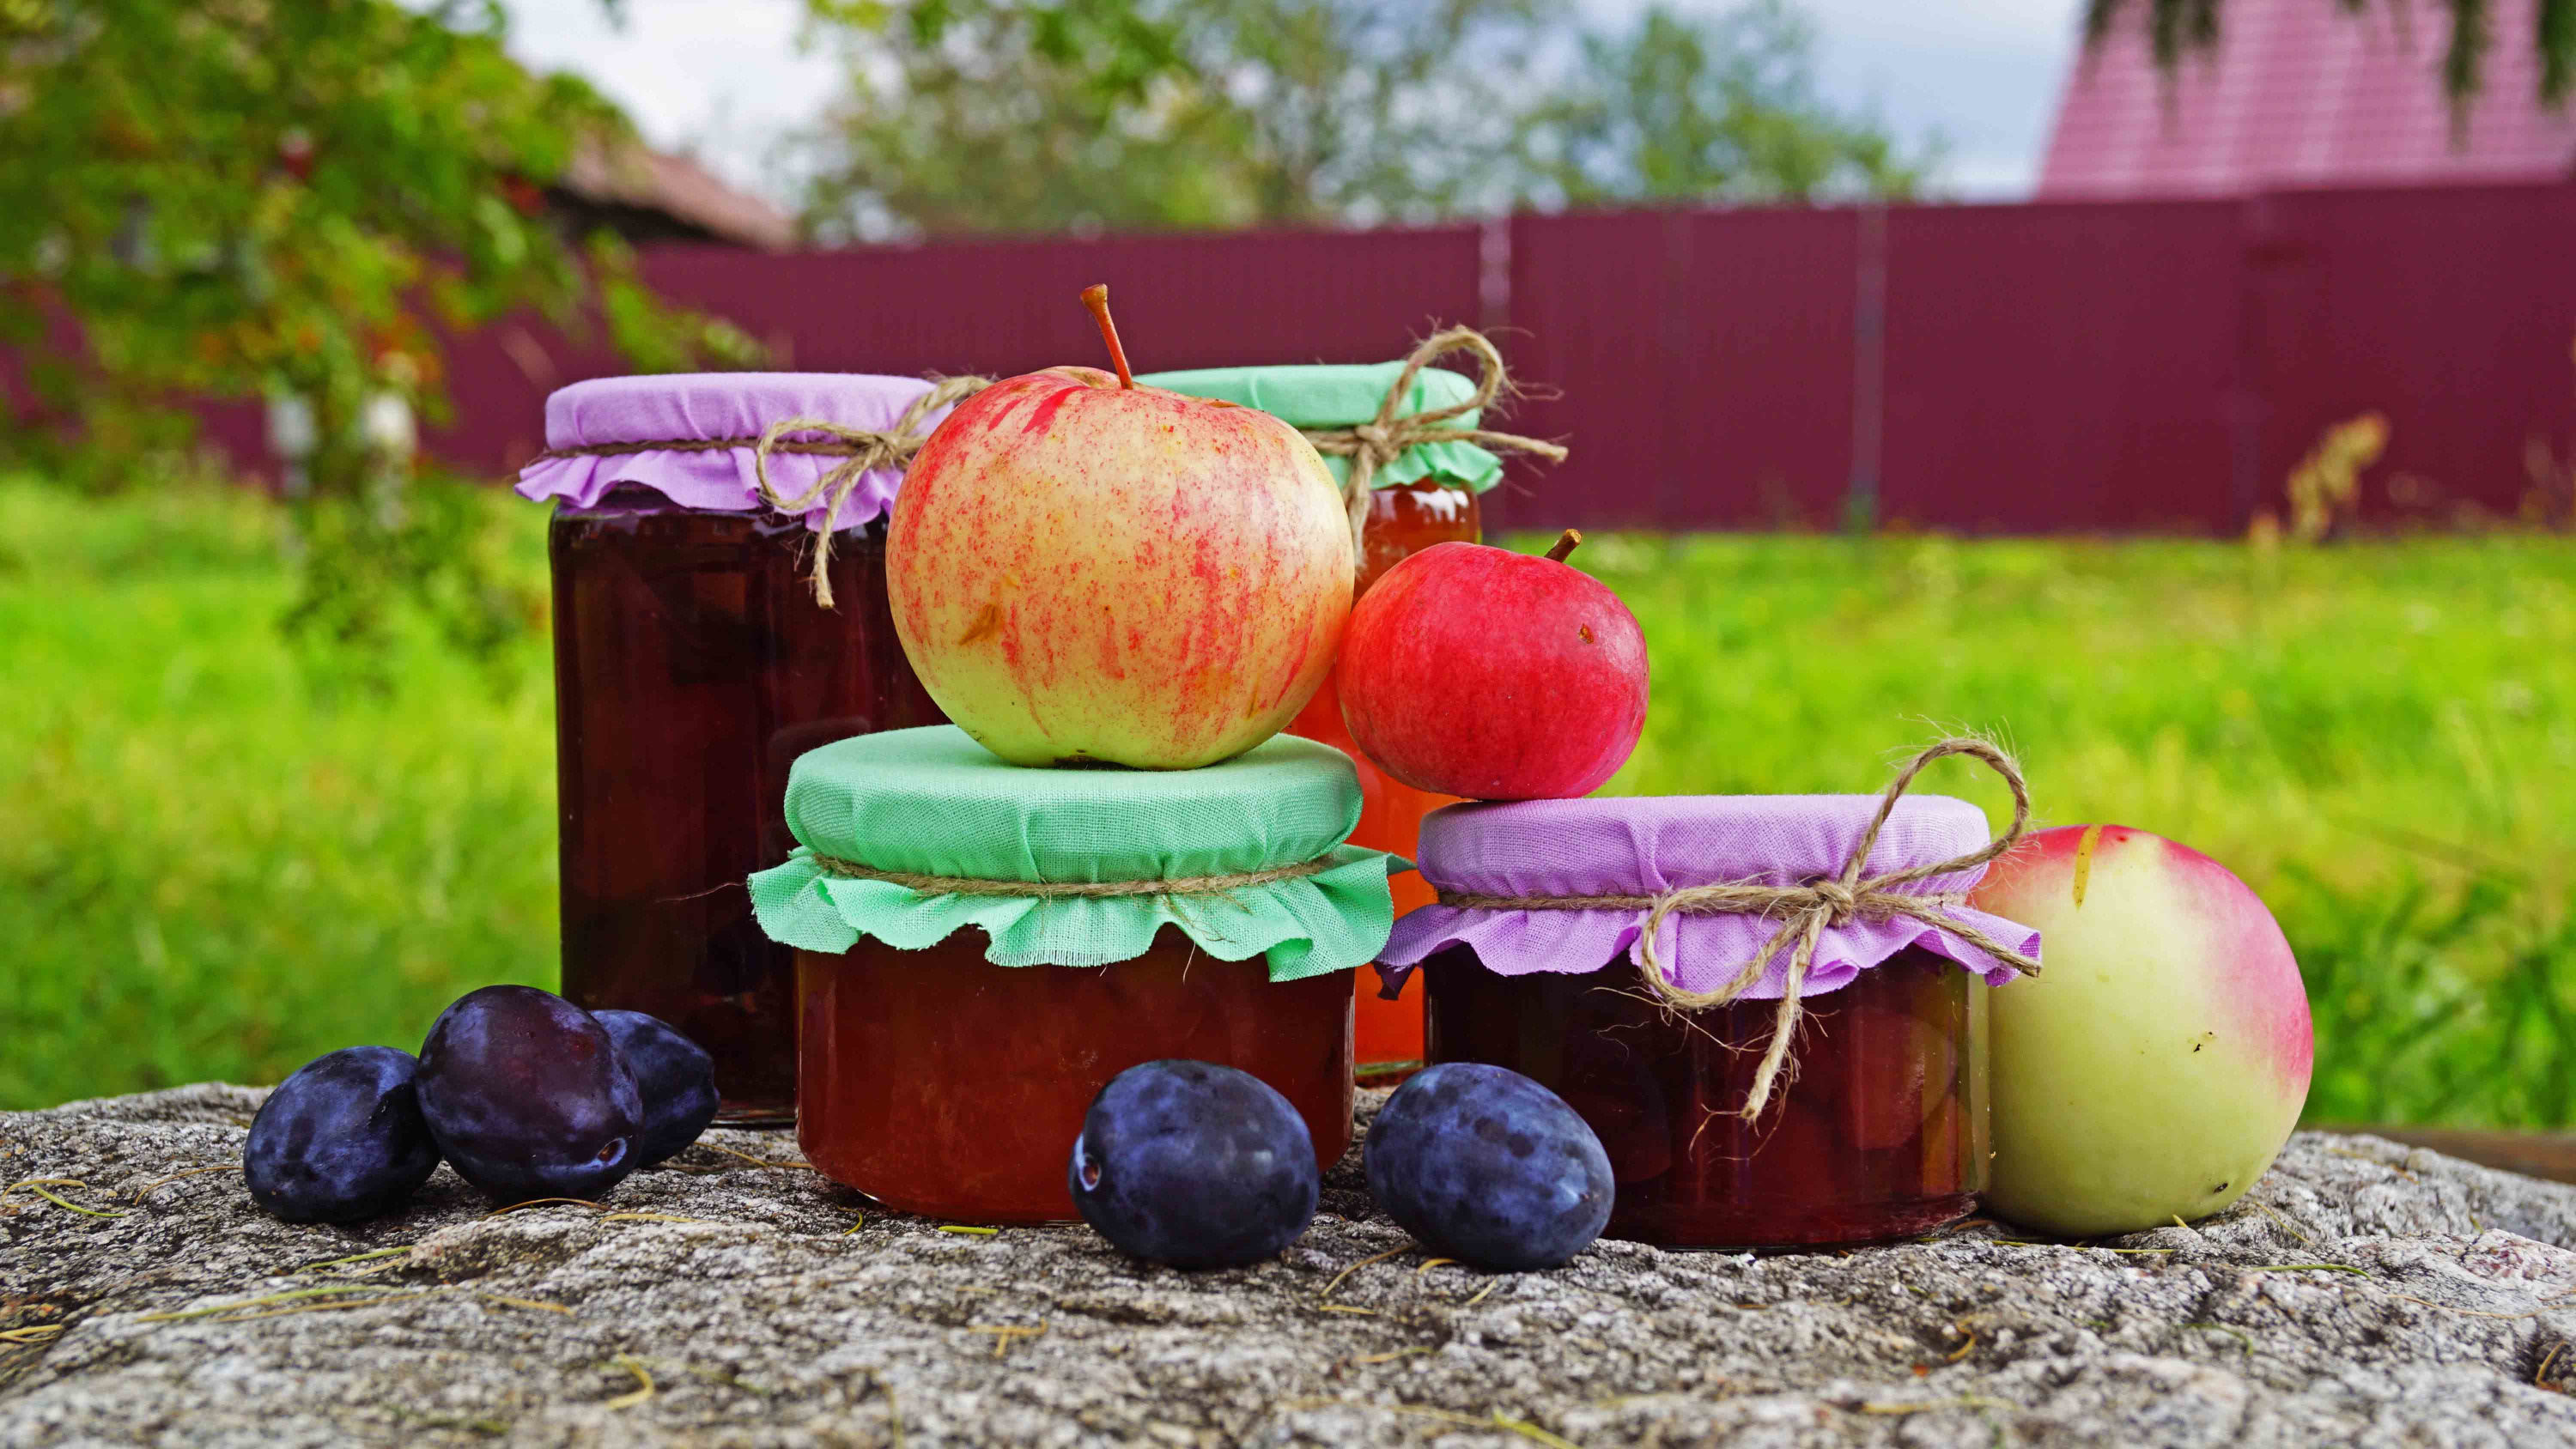 Сливы и яблоки из нашего сада. <a href="https://www.instagram.com/farmstead_ivishenie/?hl=nl" target="_blank" class="_">И джемы из этих плодов</a>